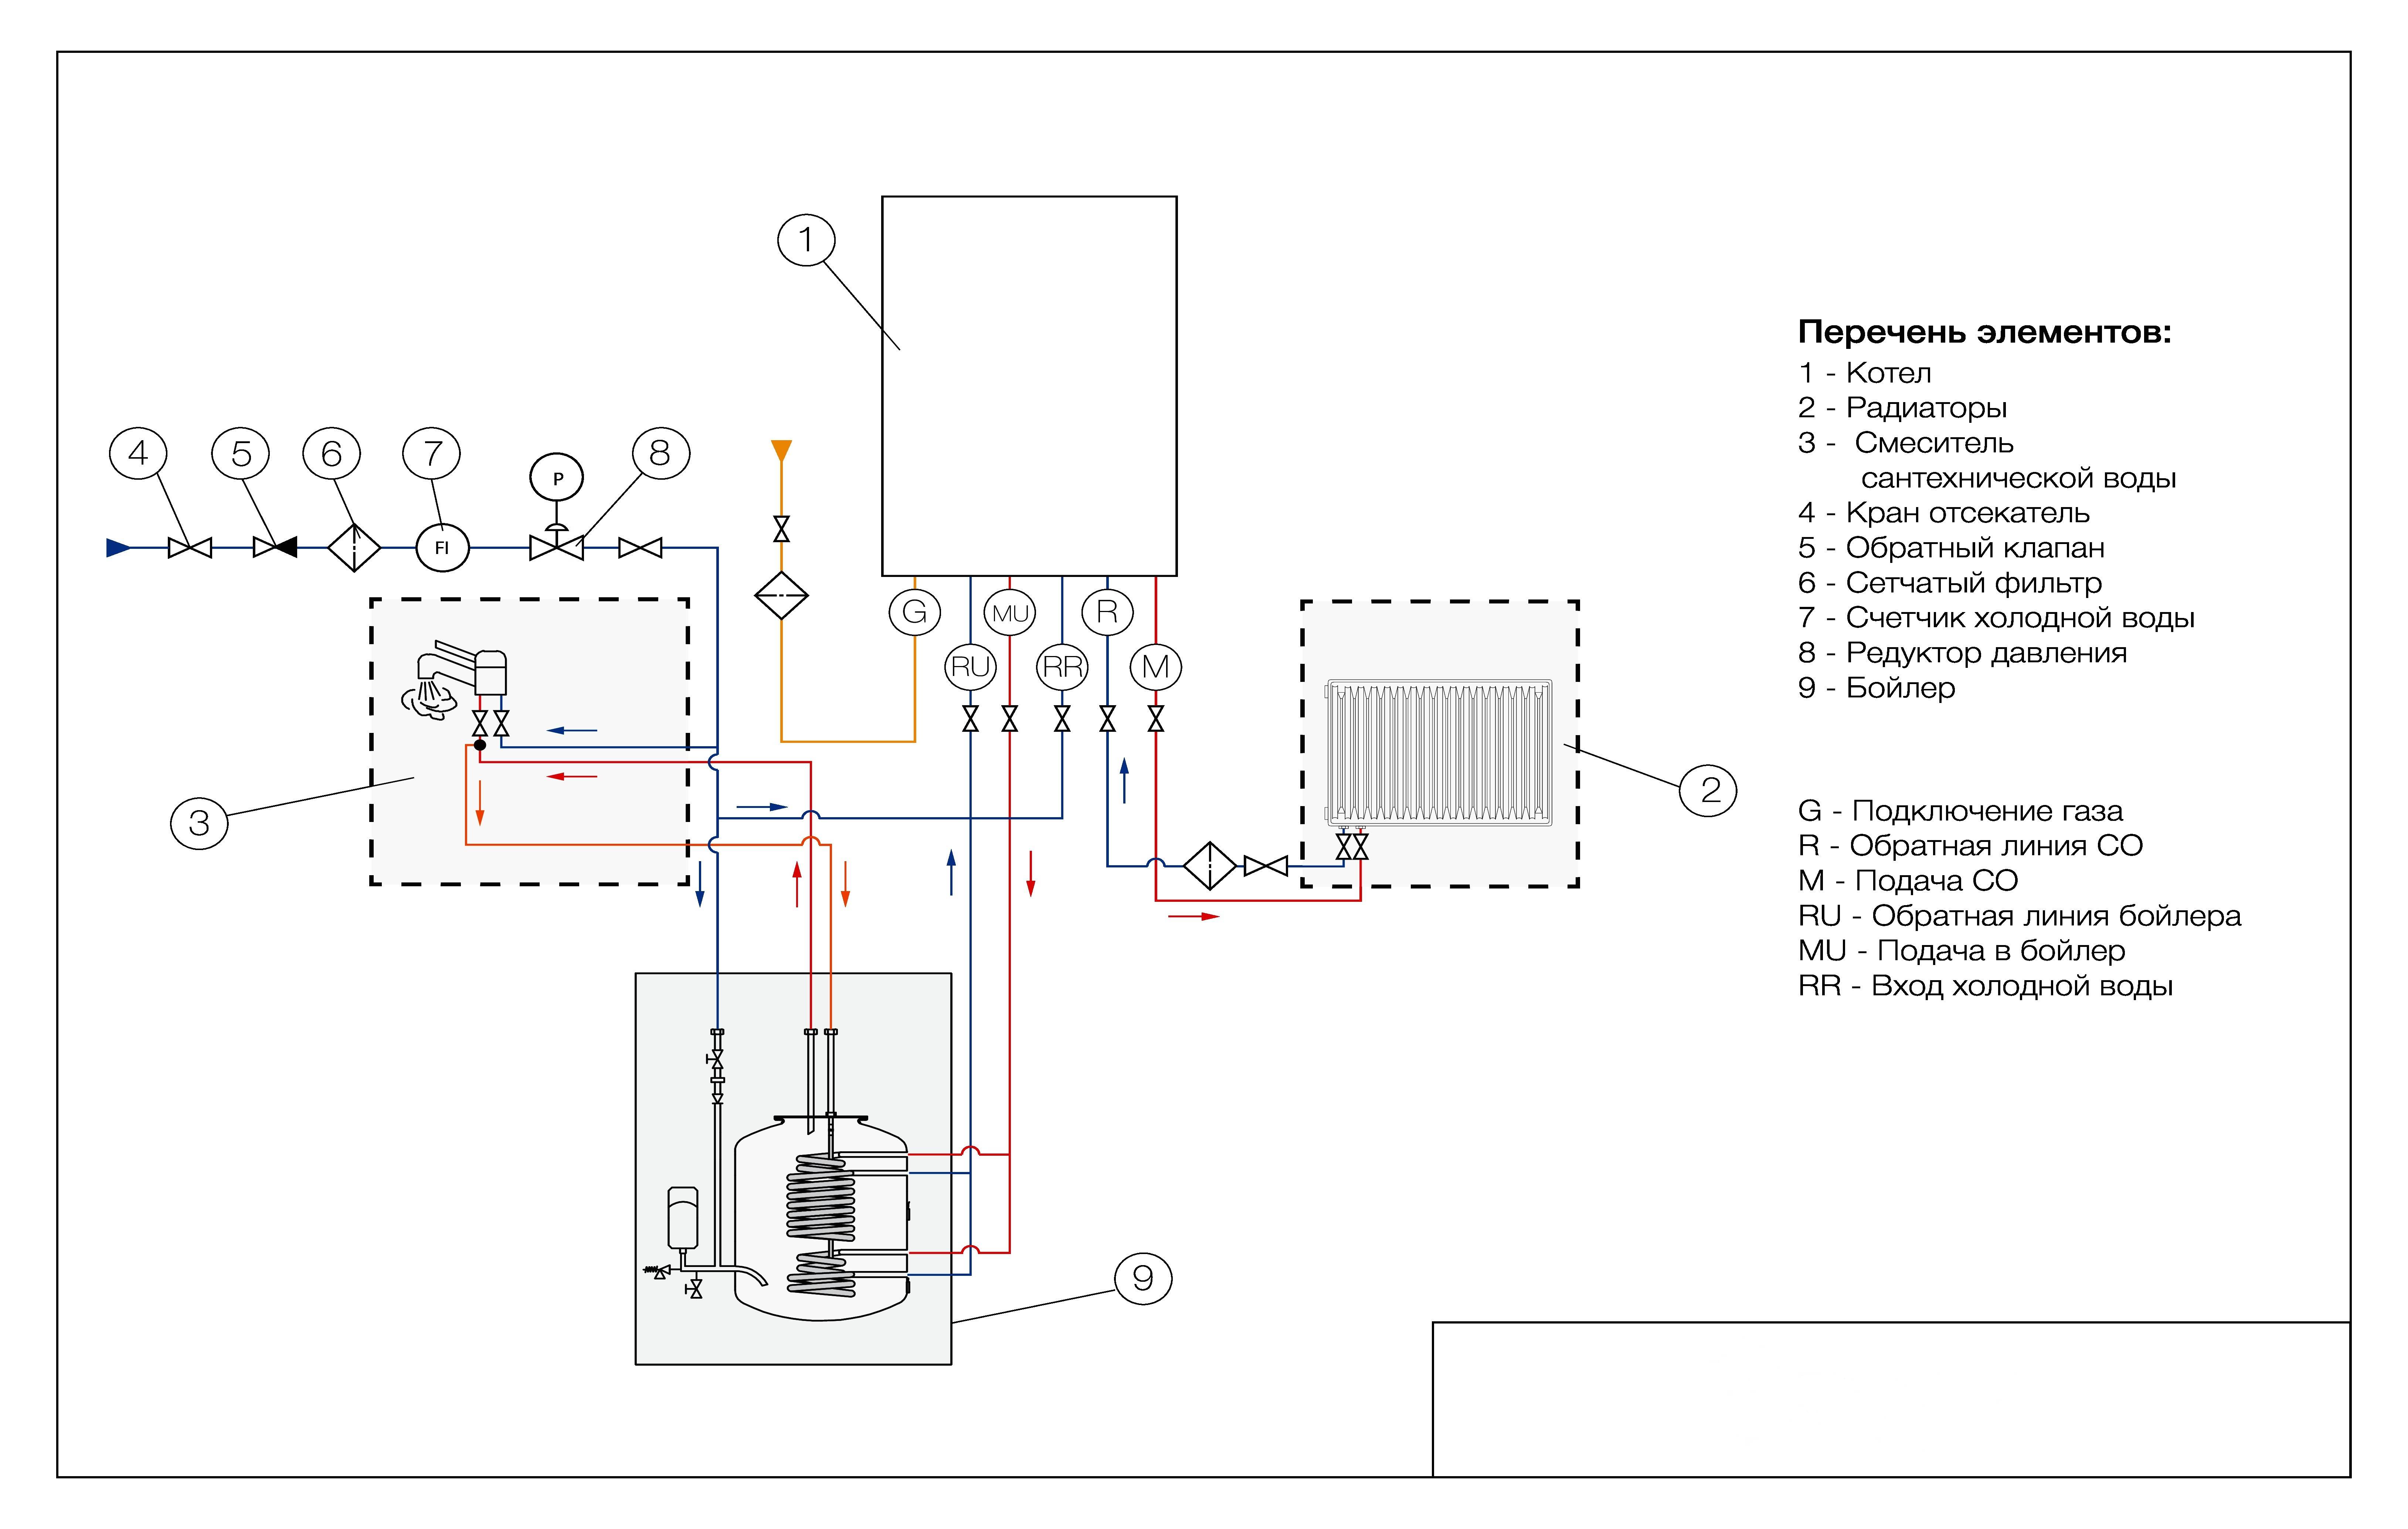 Особенности установки газового водонагревателя аристон: практические советы по подключению и эксплуатации